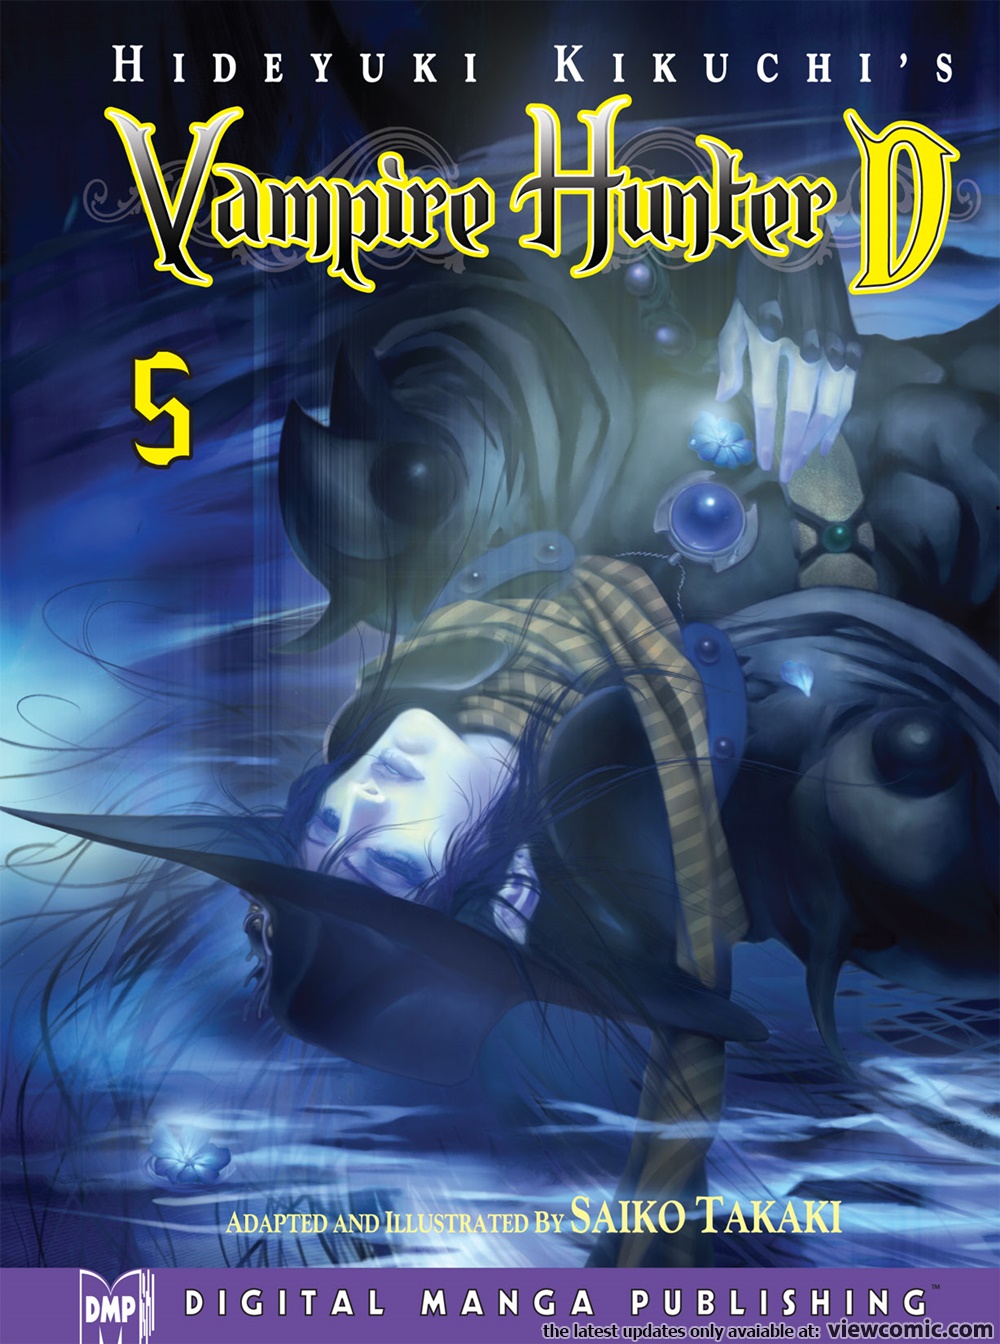 Vampire Hunter D Bloodlust, vampire Hunter D, dhampir, vampire Hunter,  buffy The Vampire Slayer, Alucard, Vampire, manga, anime, fictional  Character